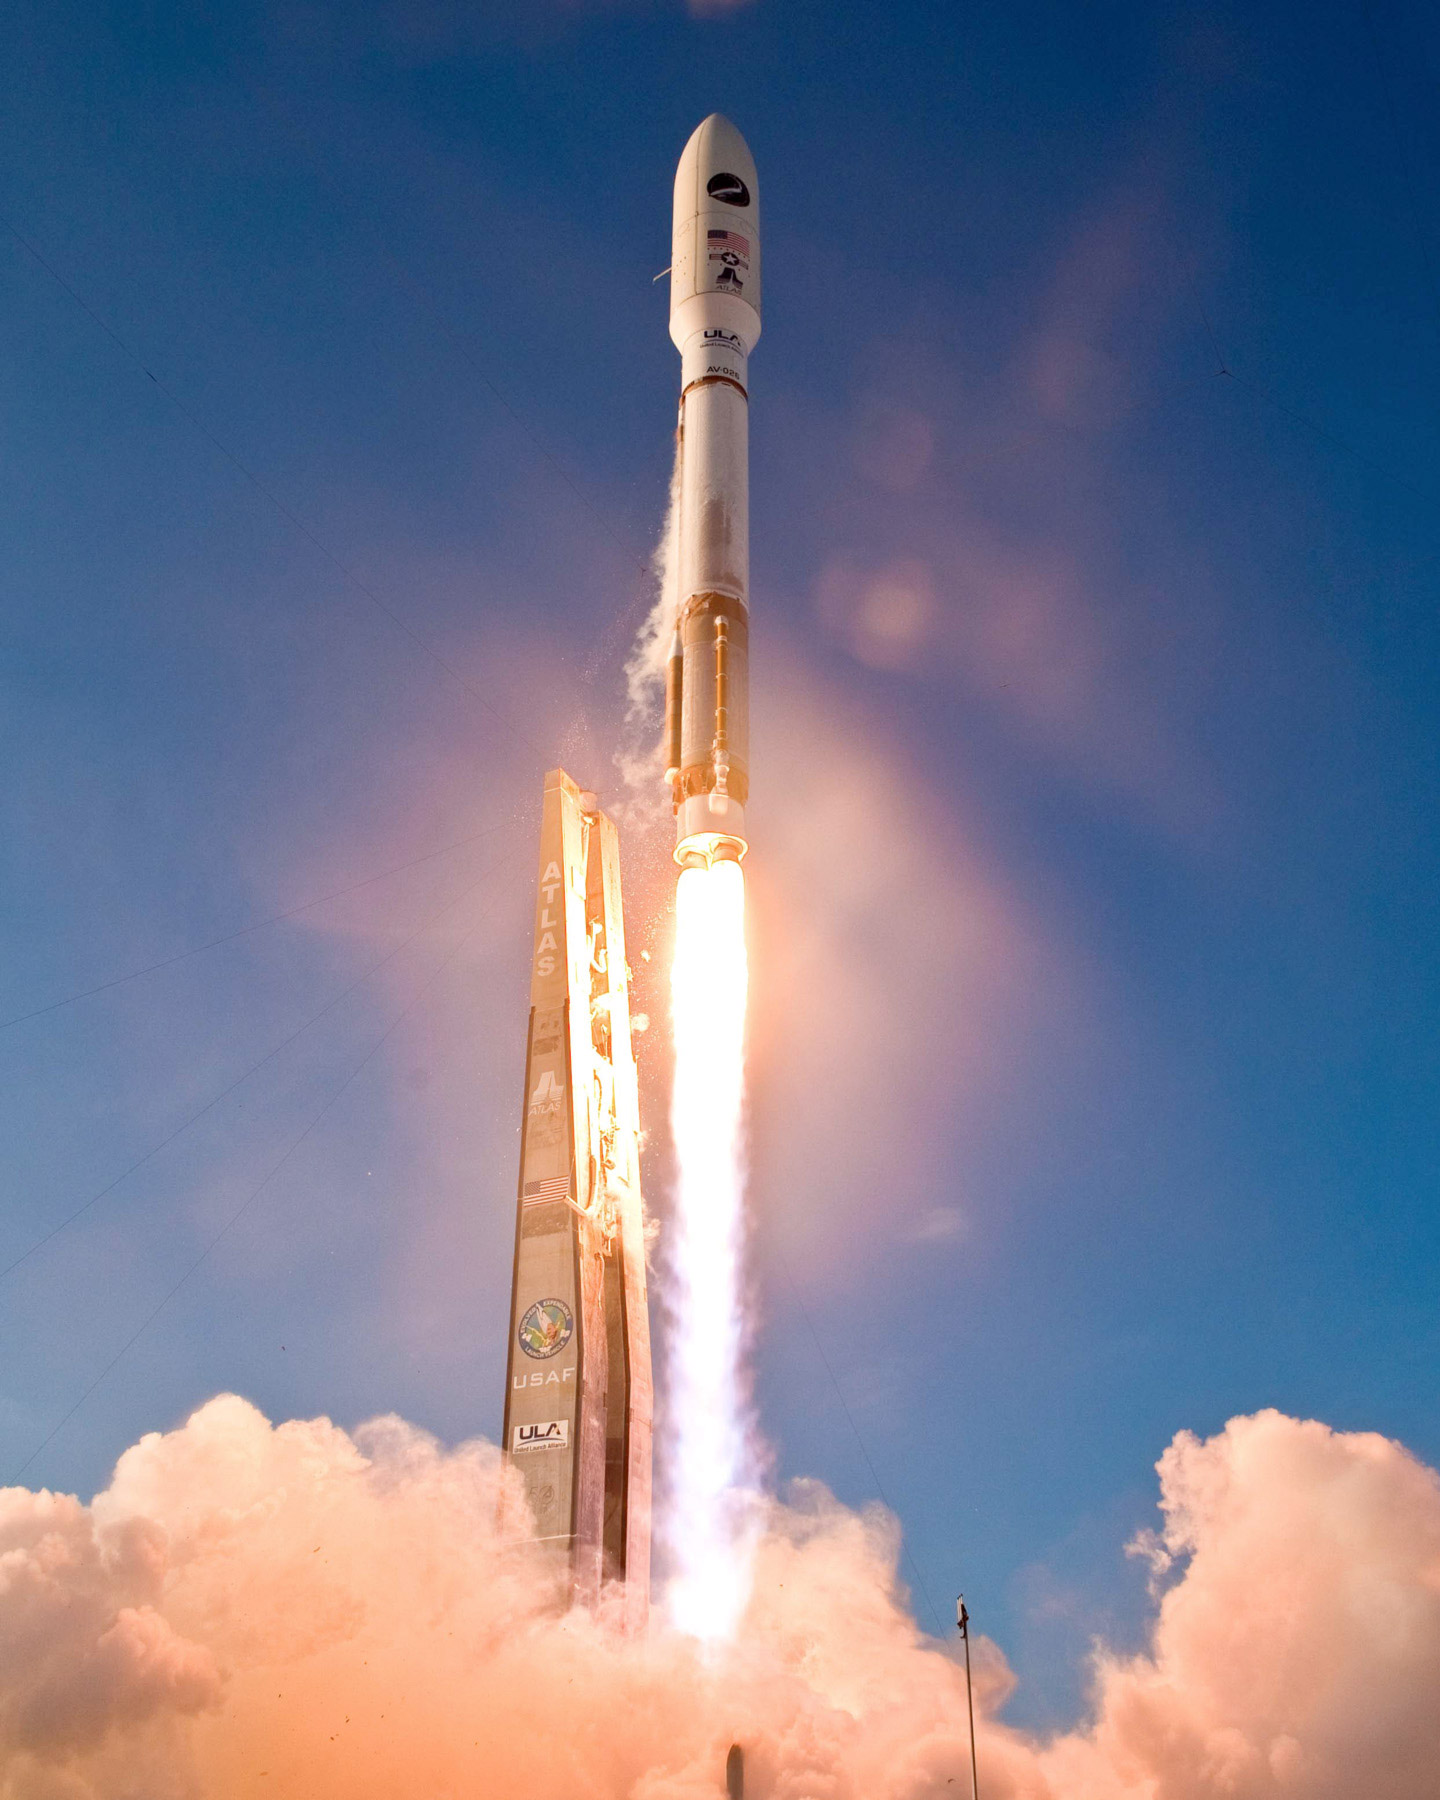 Lancement réussi du deuxième véhicule de test orbital (X-37B). Il devrait rester en orbite pendant au moins 270 jours avant de retourner sur Terre. © Boeing/Unitel launch Alliance